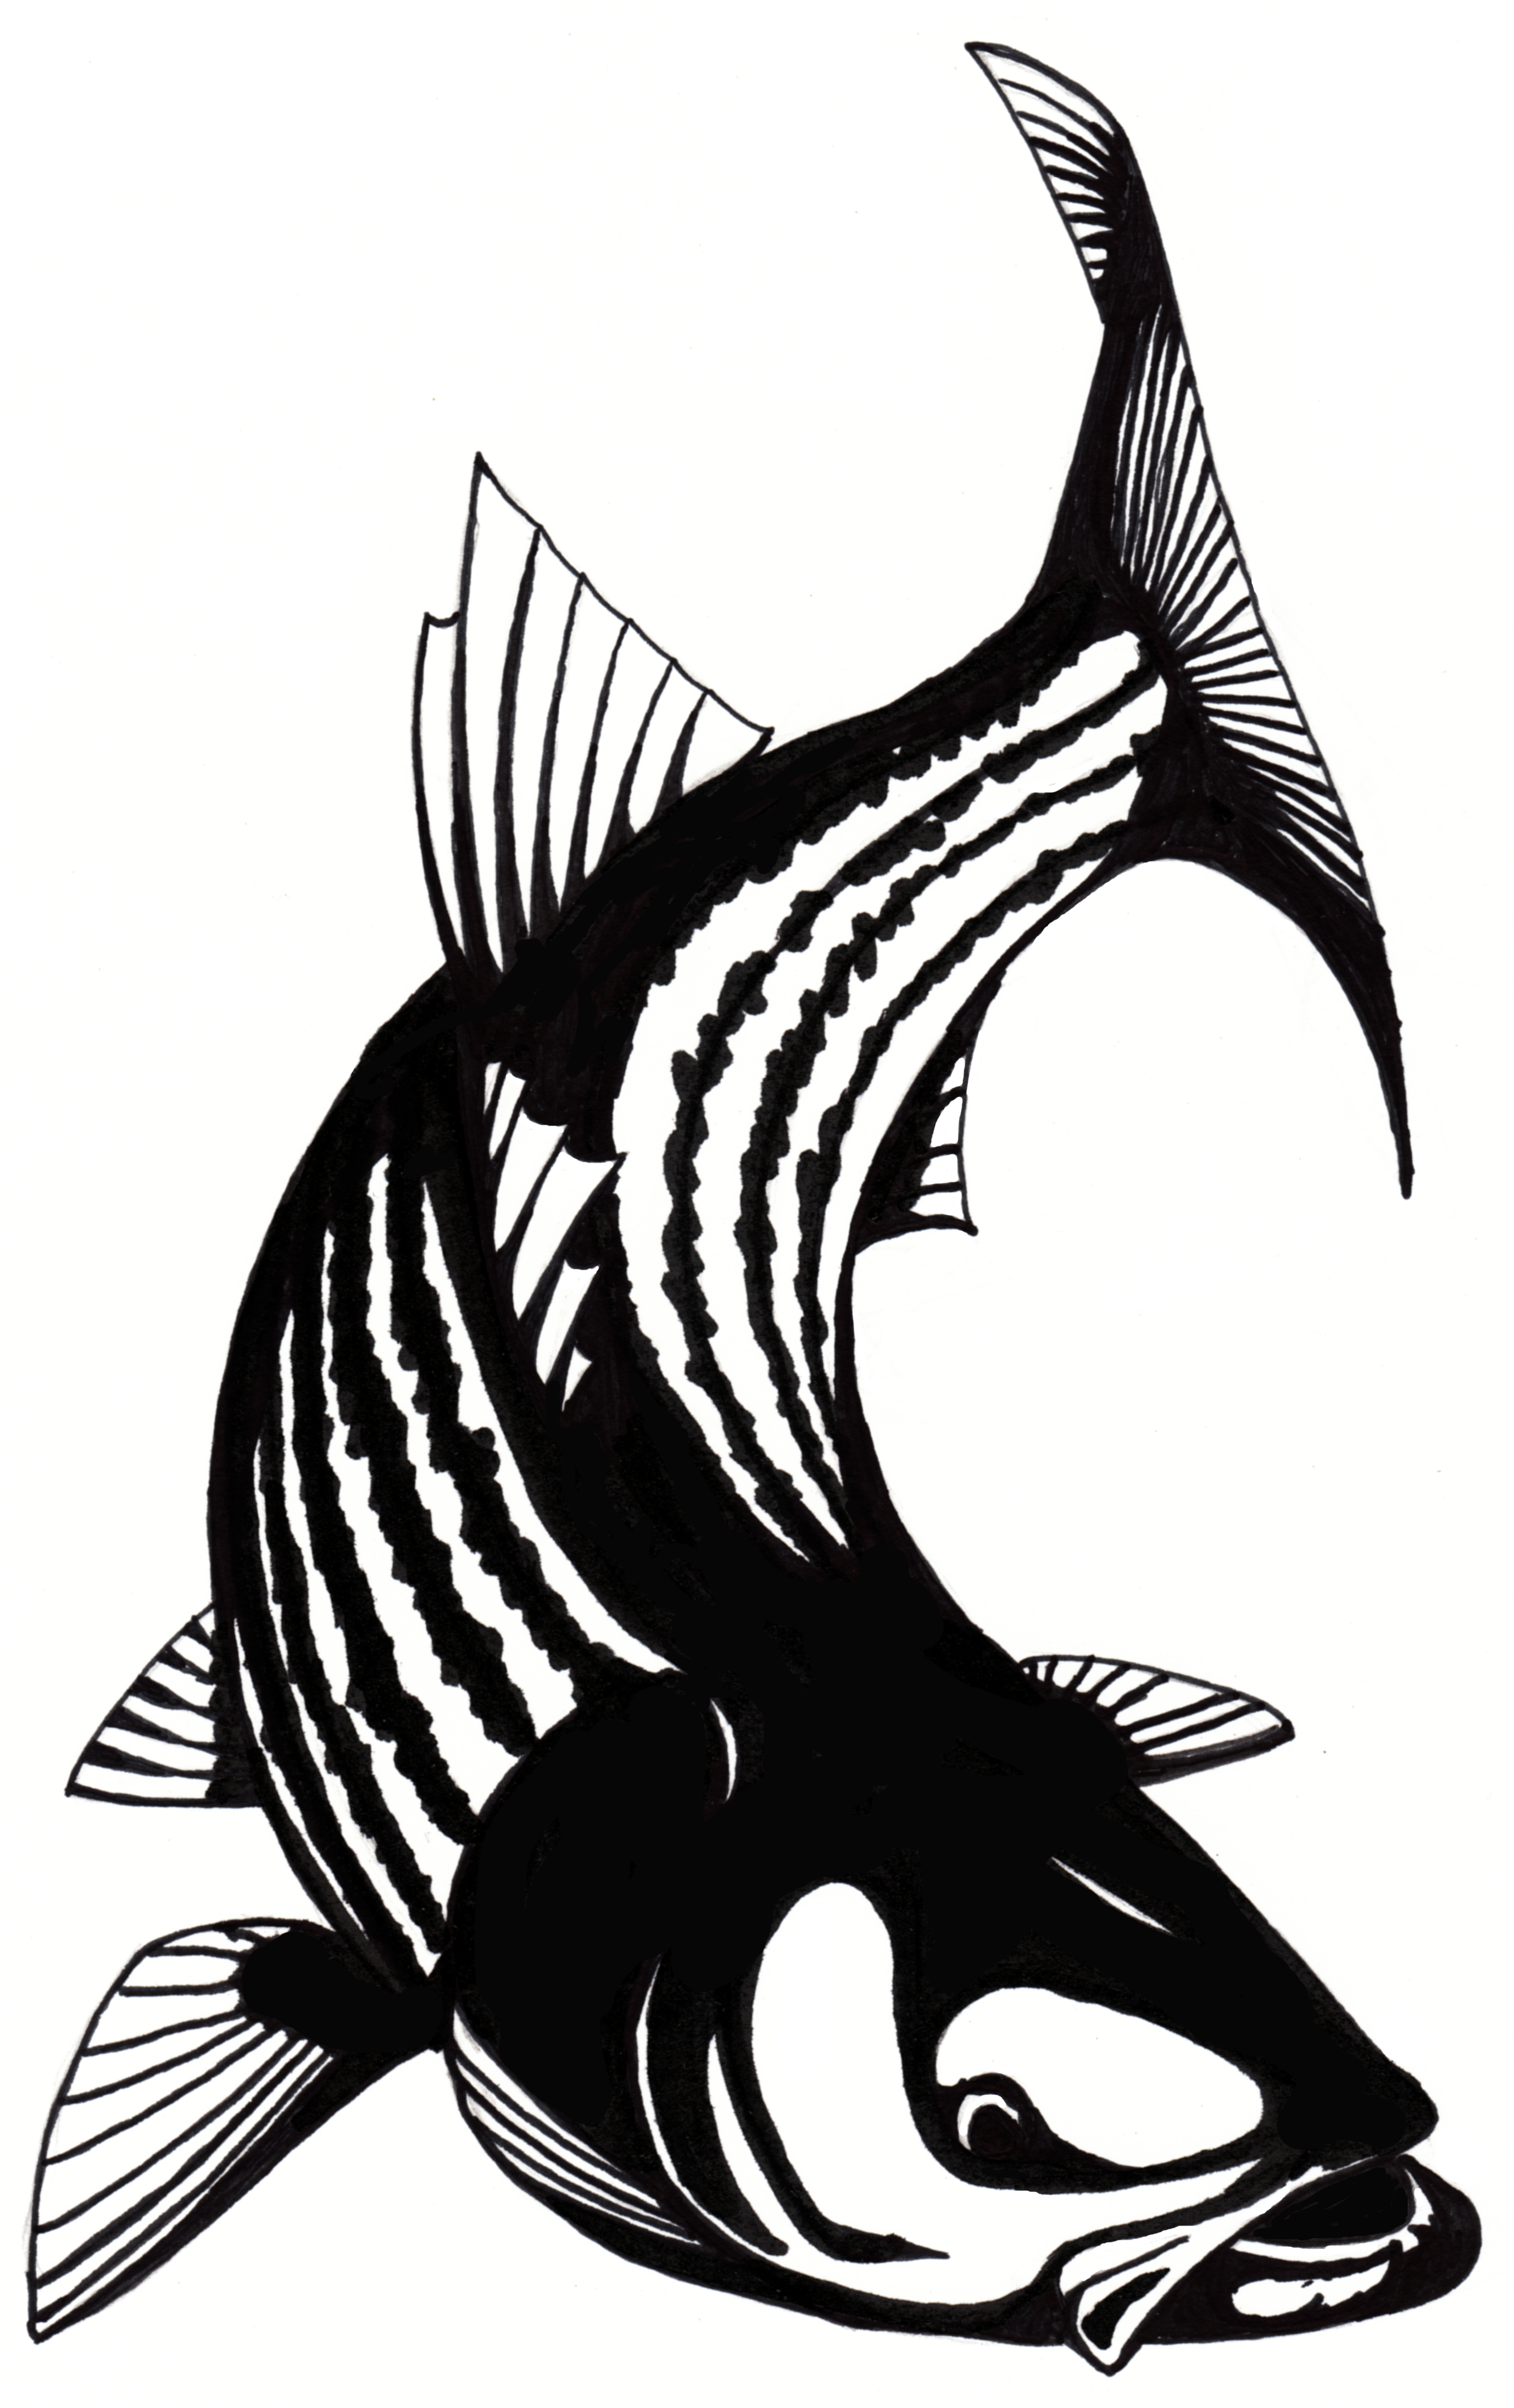 trout clipart logo